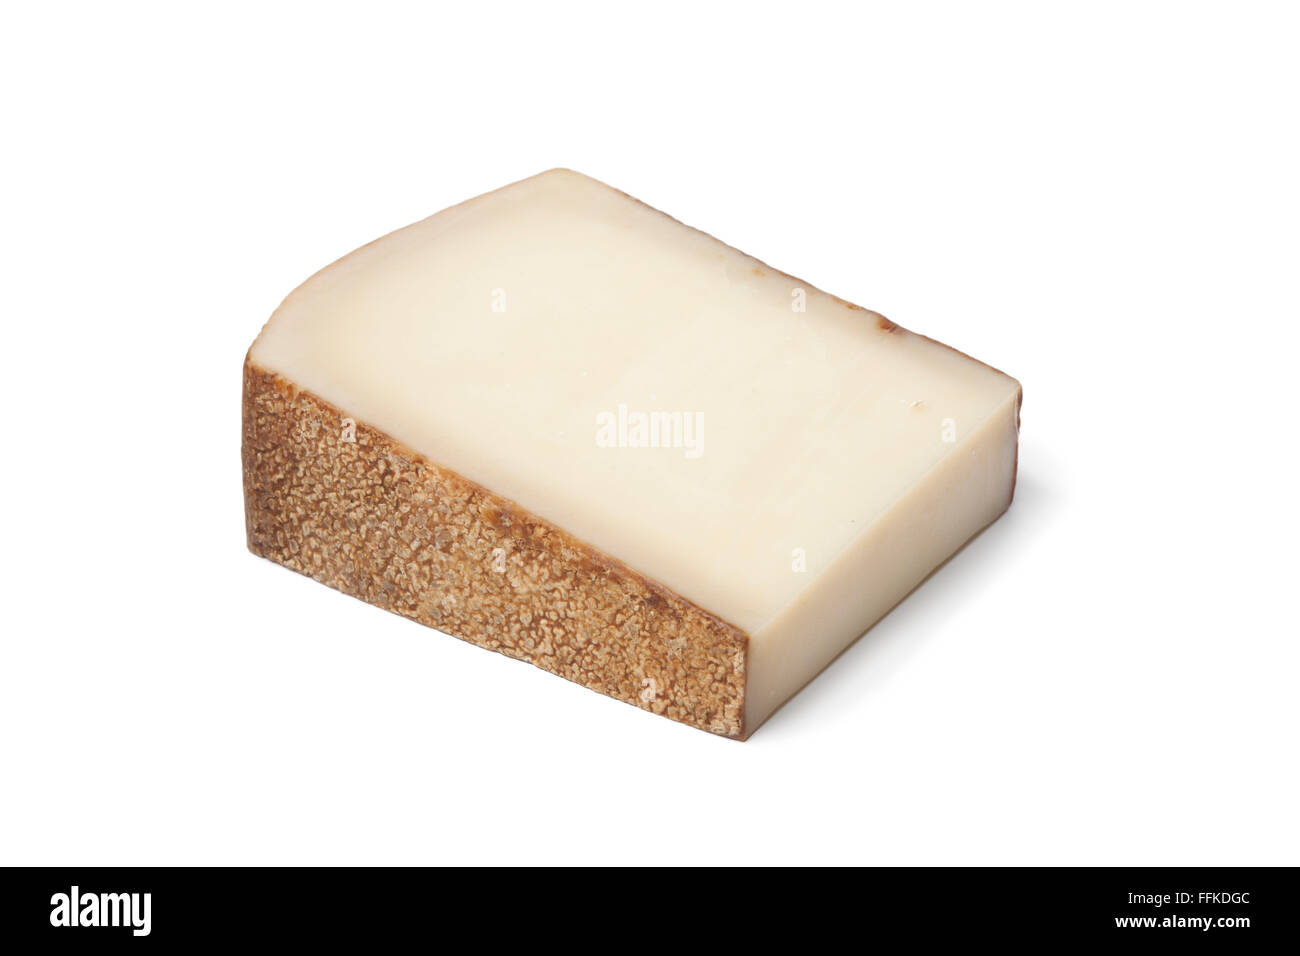 Morceau de fromage gruyère suisse sur fond blanc Banque D'Images